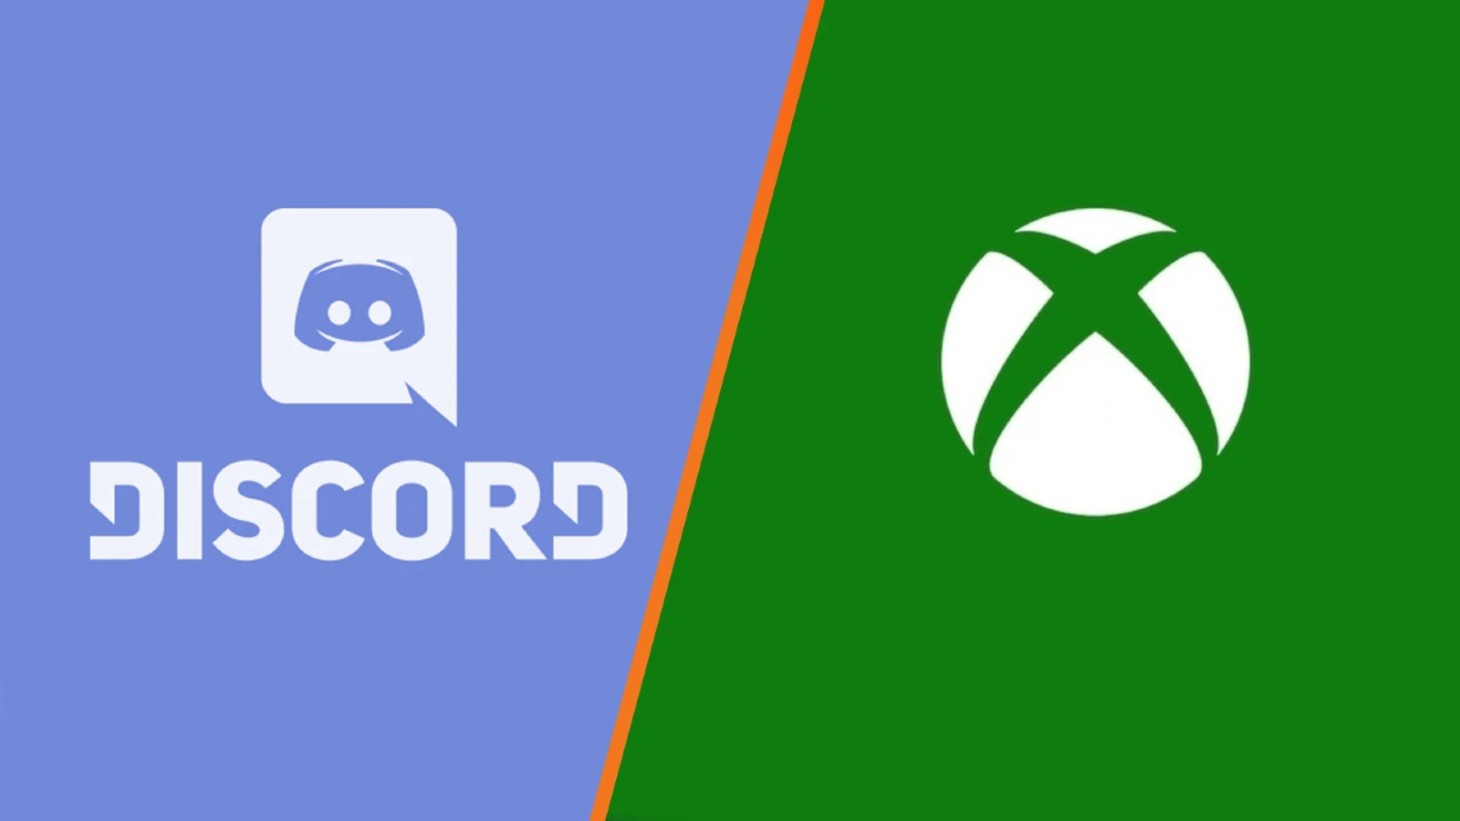 Le chat vocal Discord arrive bientôt sur Xbox 